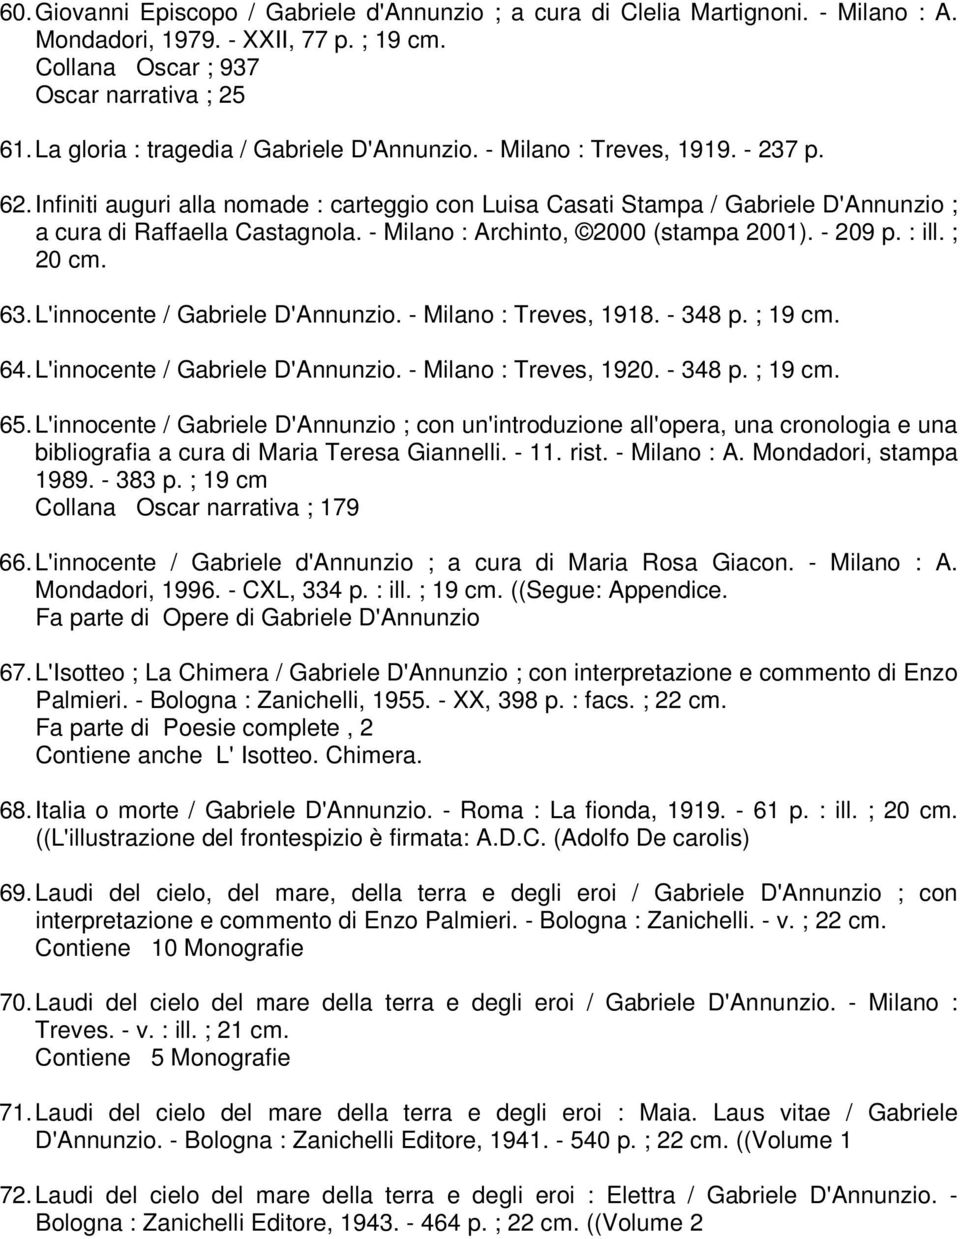 Infiniti auguri alla nomade : carteggio con Luisa Casati Stampa / Gabriele D'Annunzio ; a cura di Raffaella Castagnola. - Milano : Archinto, 2000 (stampa 2001). - 209 p. : ill. ; 20 cm. 63.